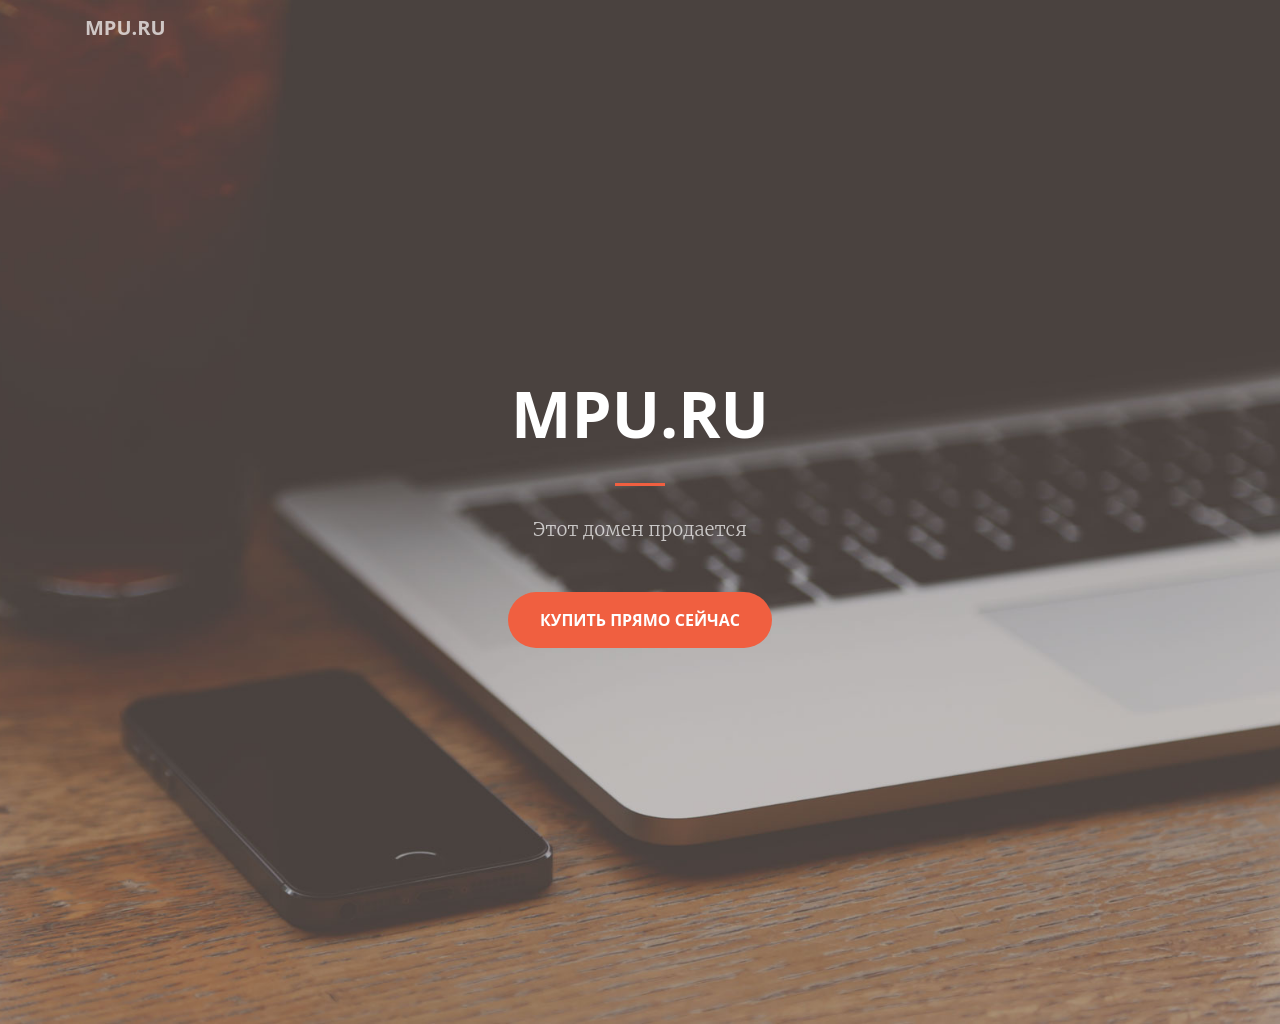 mpu.ru